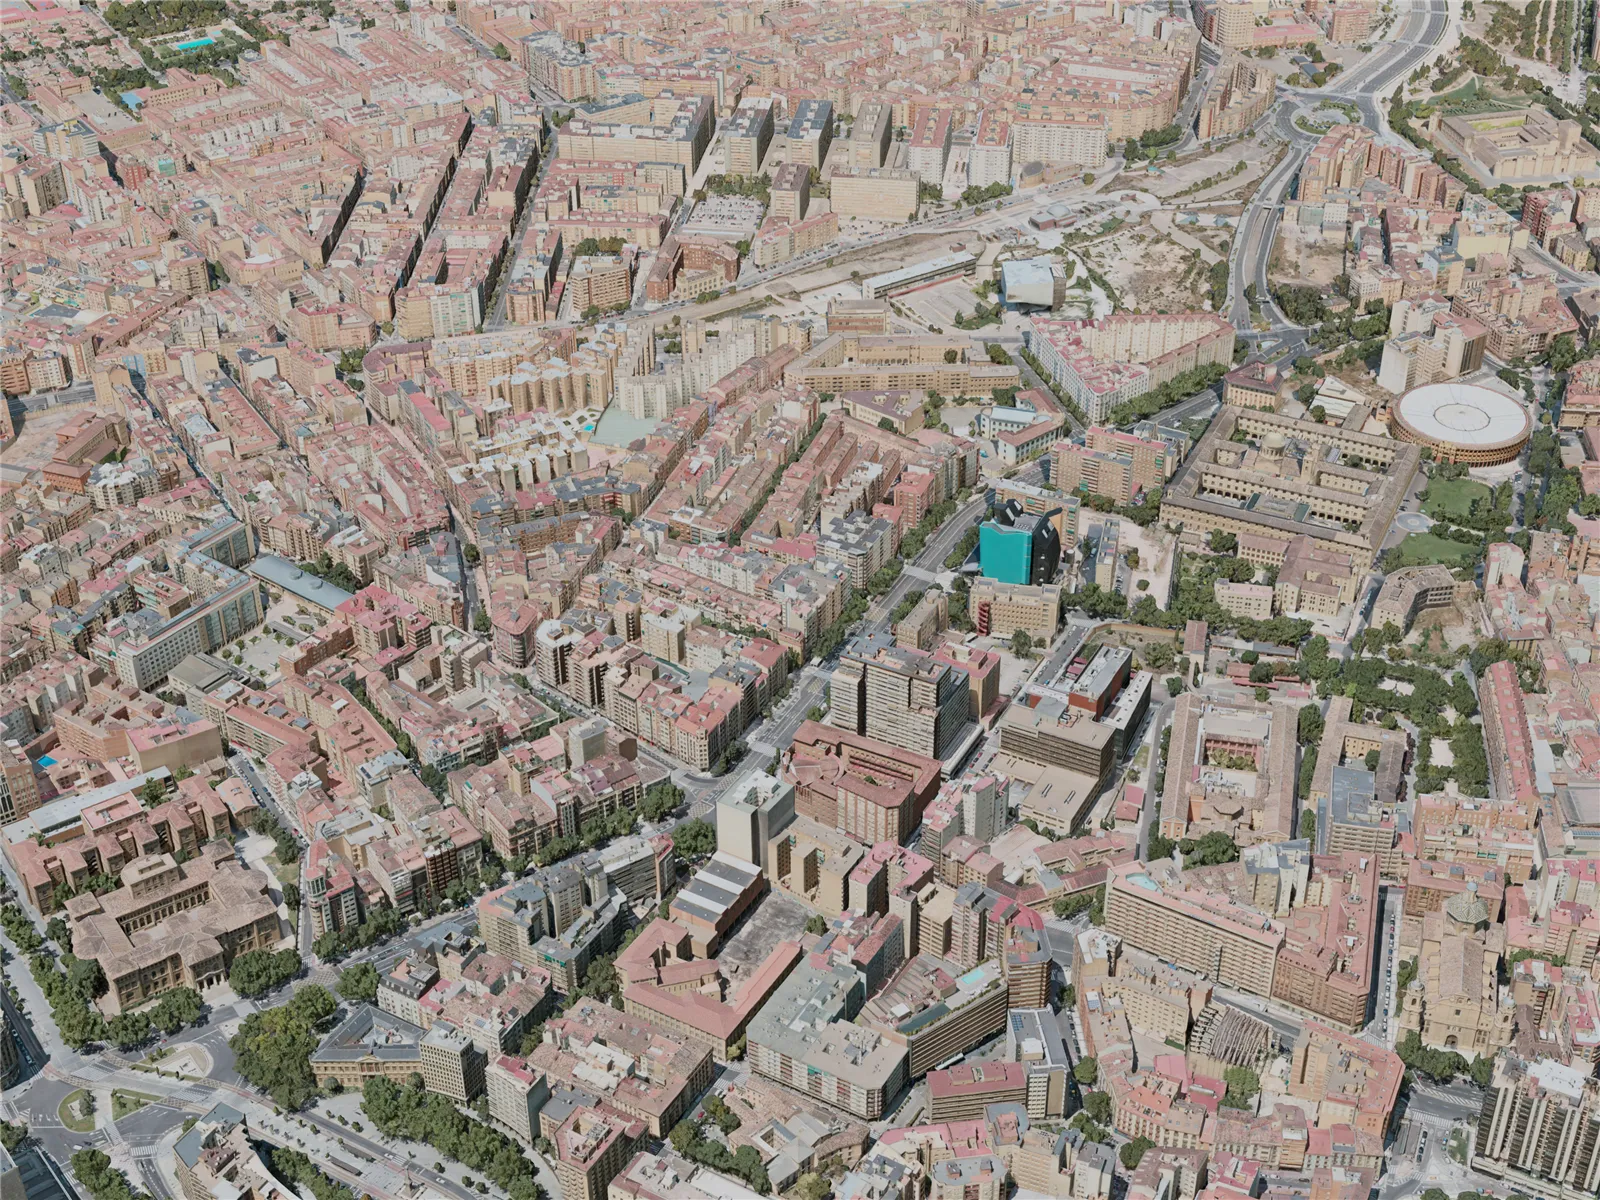 Zaragoza City, Spain (2020) 3D Model